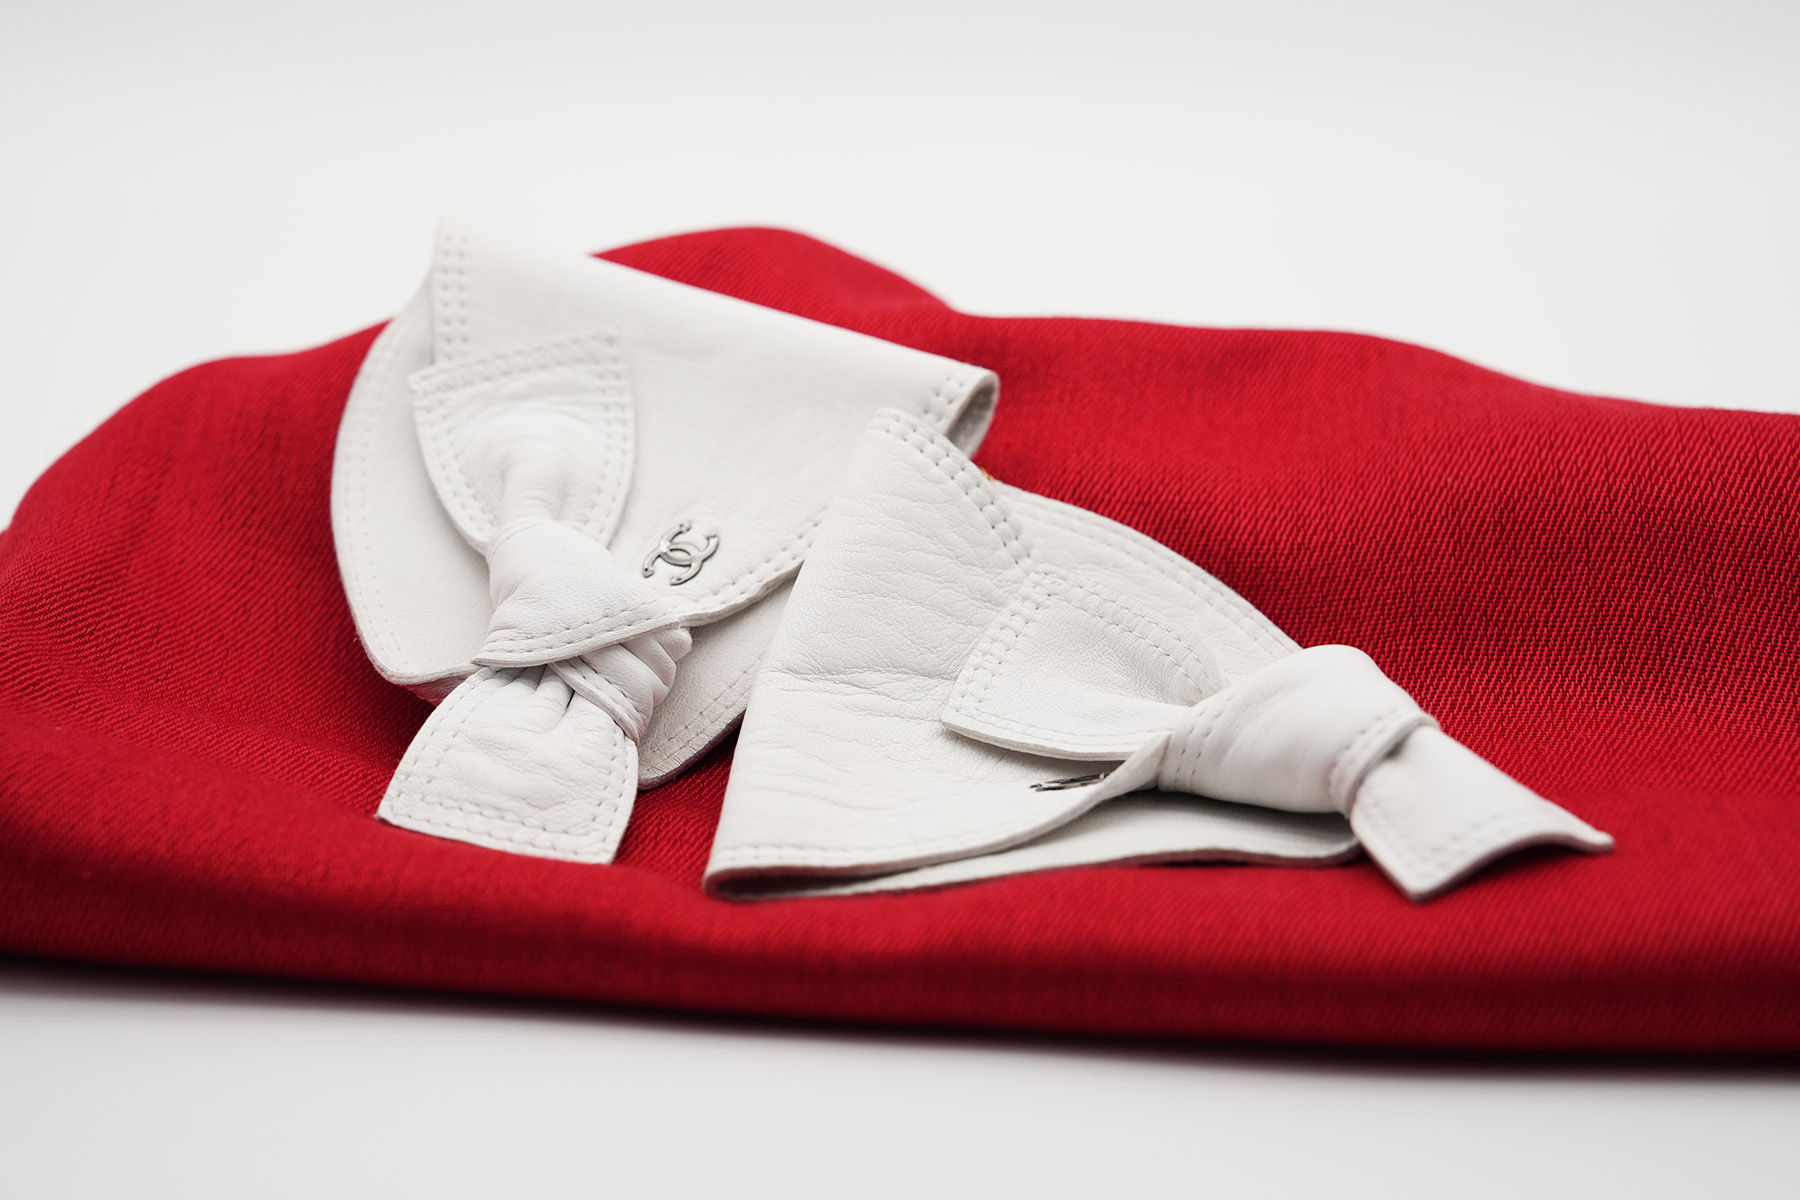 CHANEL - Halbfingerhandschuhe mit Schleife aus Leder - weiß - Gr. XS/S - Vintage 